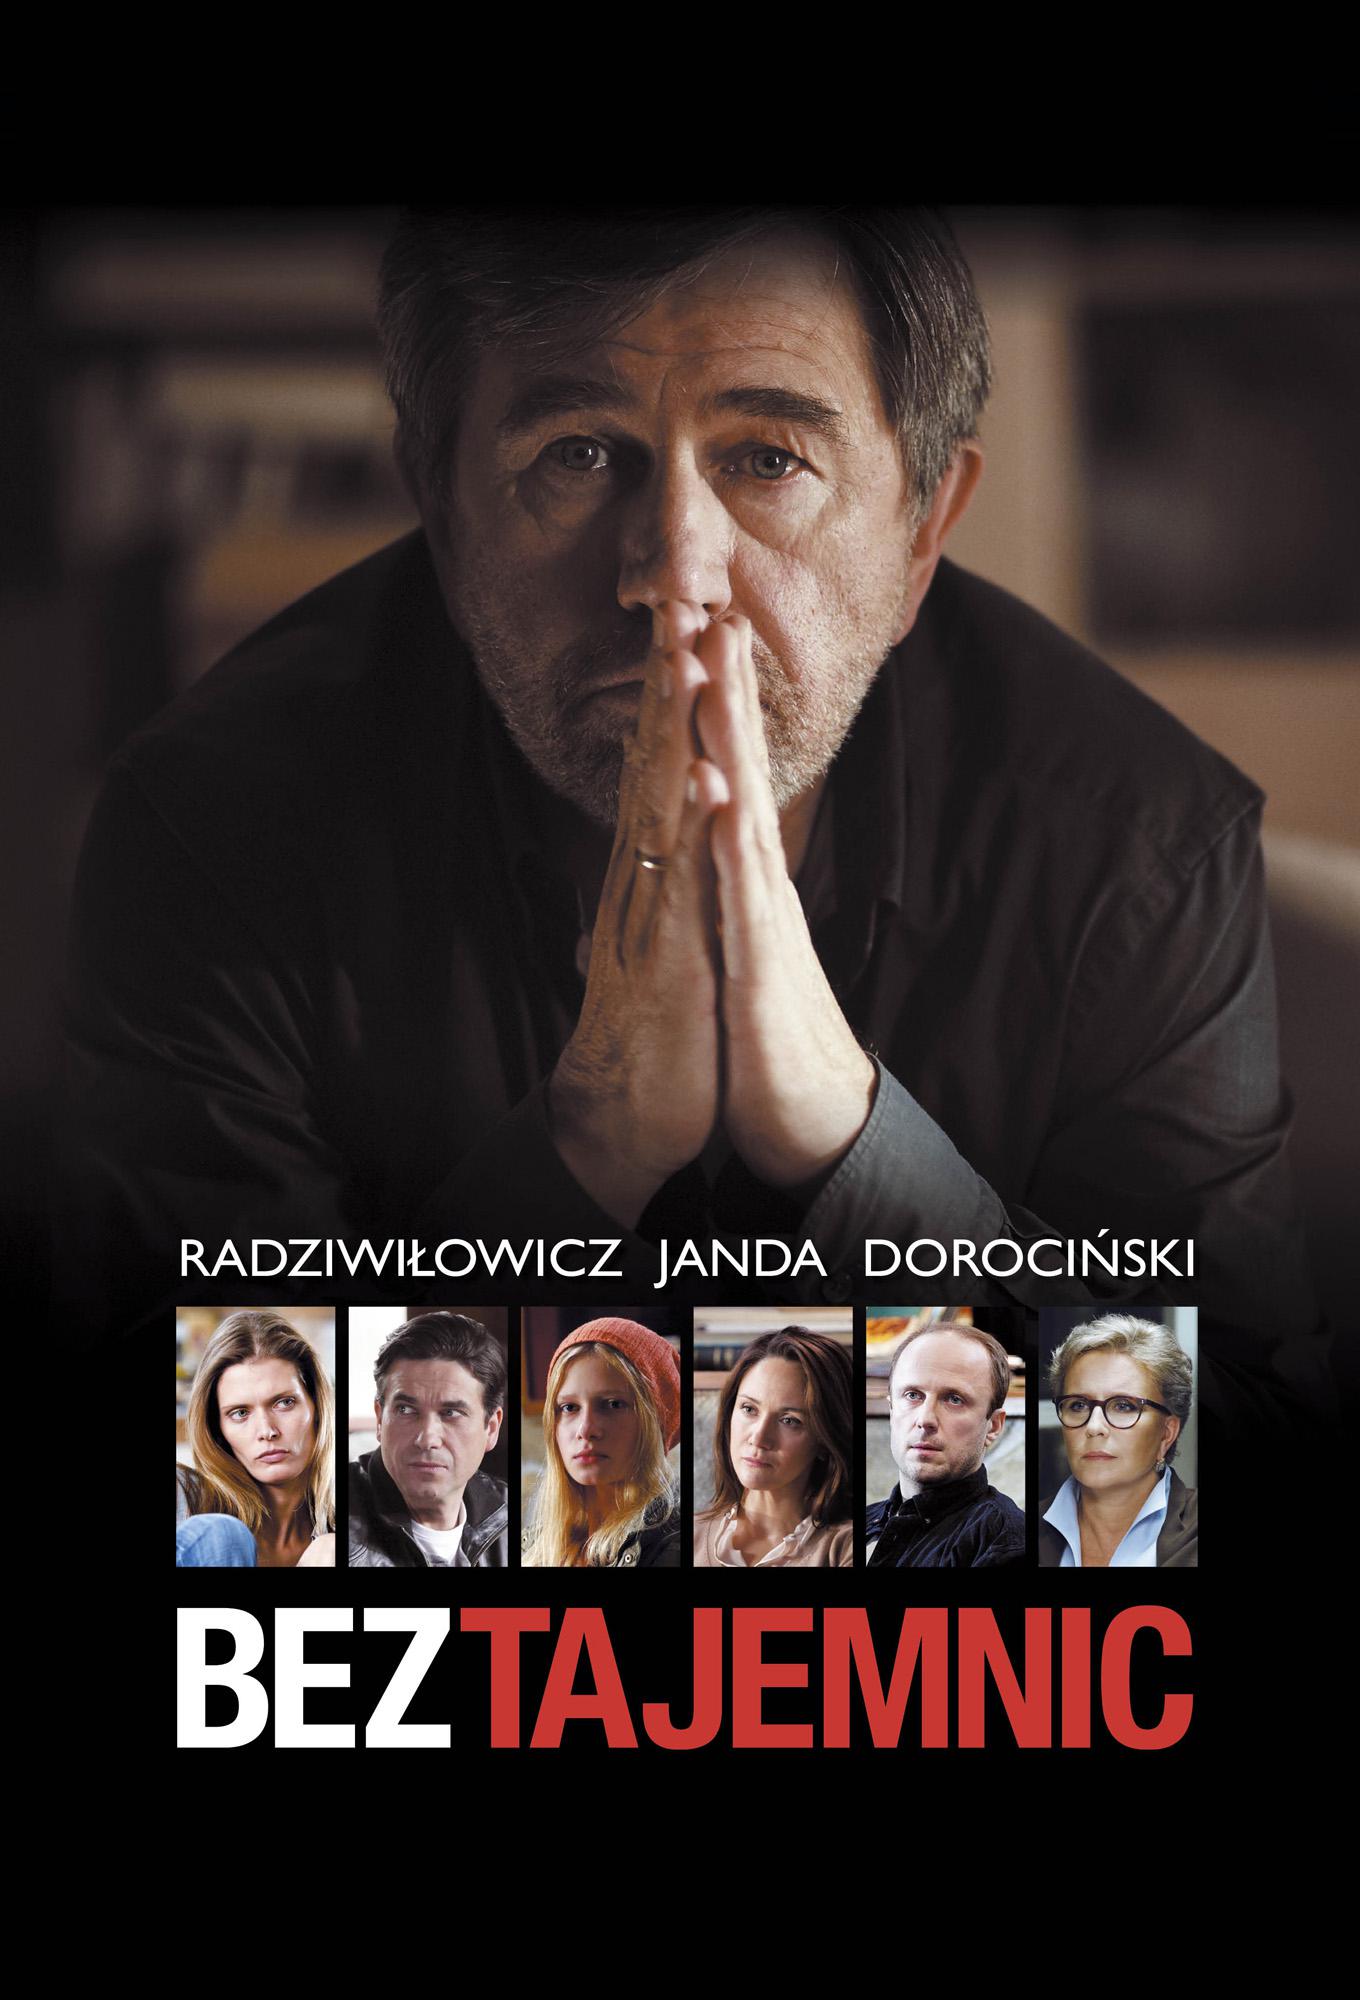 TV ratings for Bez Tajemnic in Turkey. HBO TV series